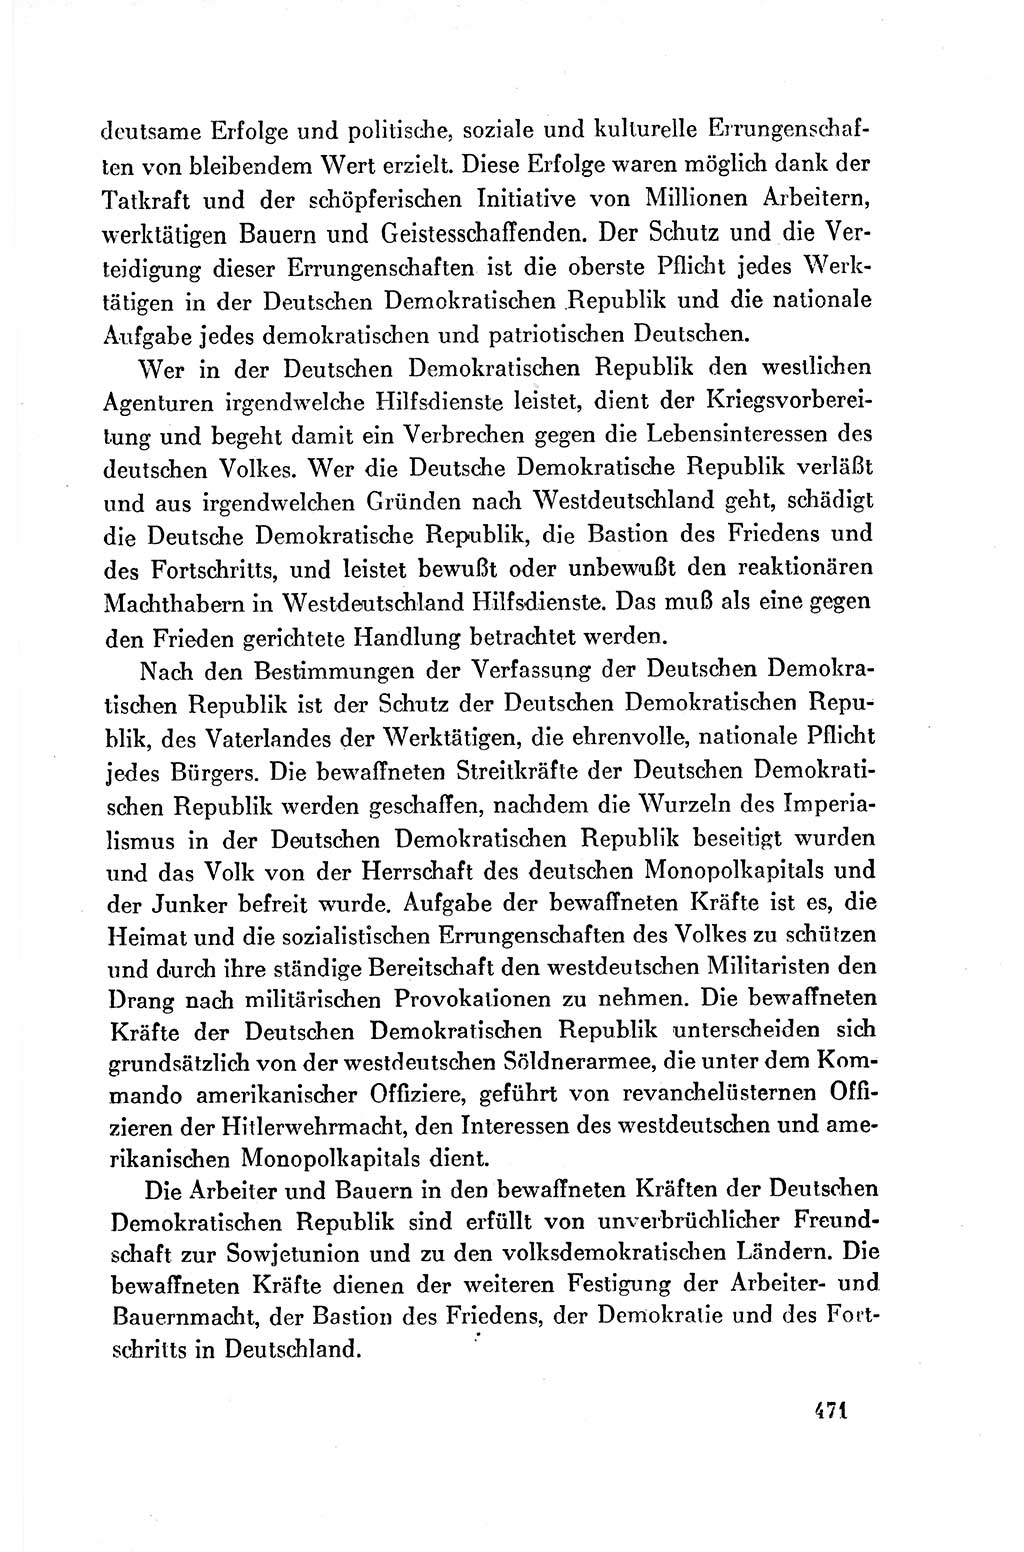 Dokumente der Sozialistischen Einheitspartei Deutschlands (SED) [Deutsche Demokratische Republik (DDR)] 1954-1955, Seite 471 (Dok. SED DDR 1954-1955, S. 471)